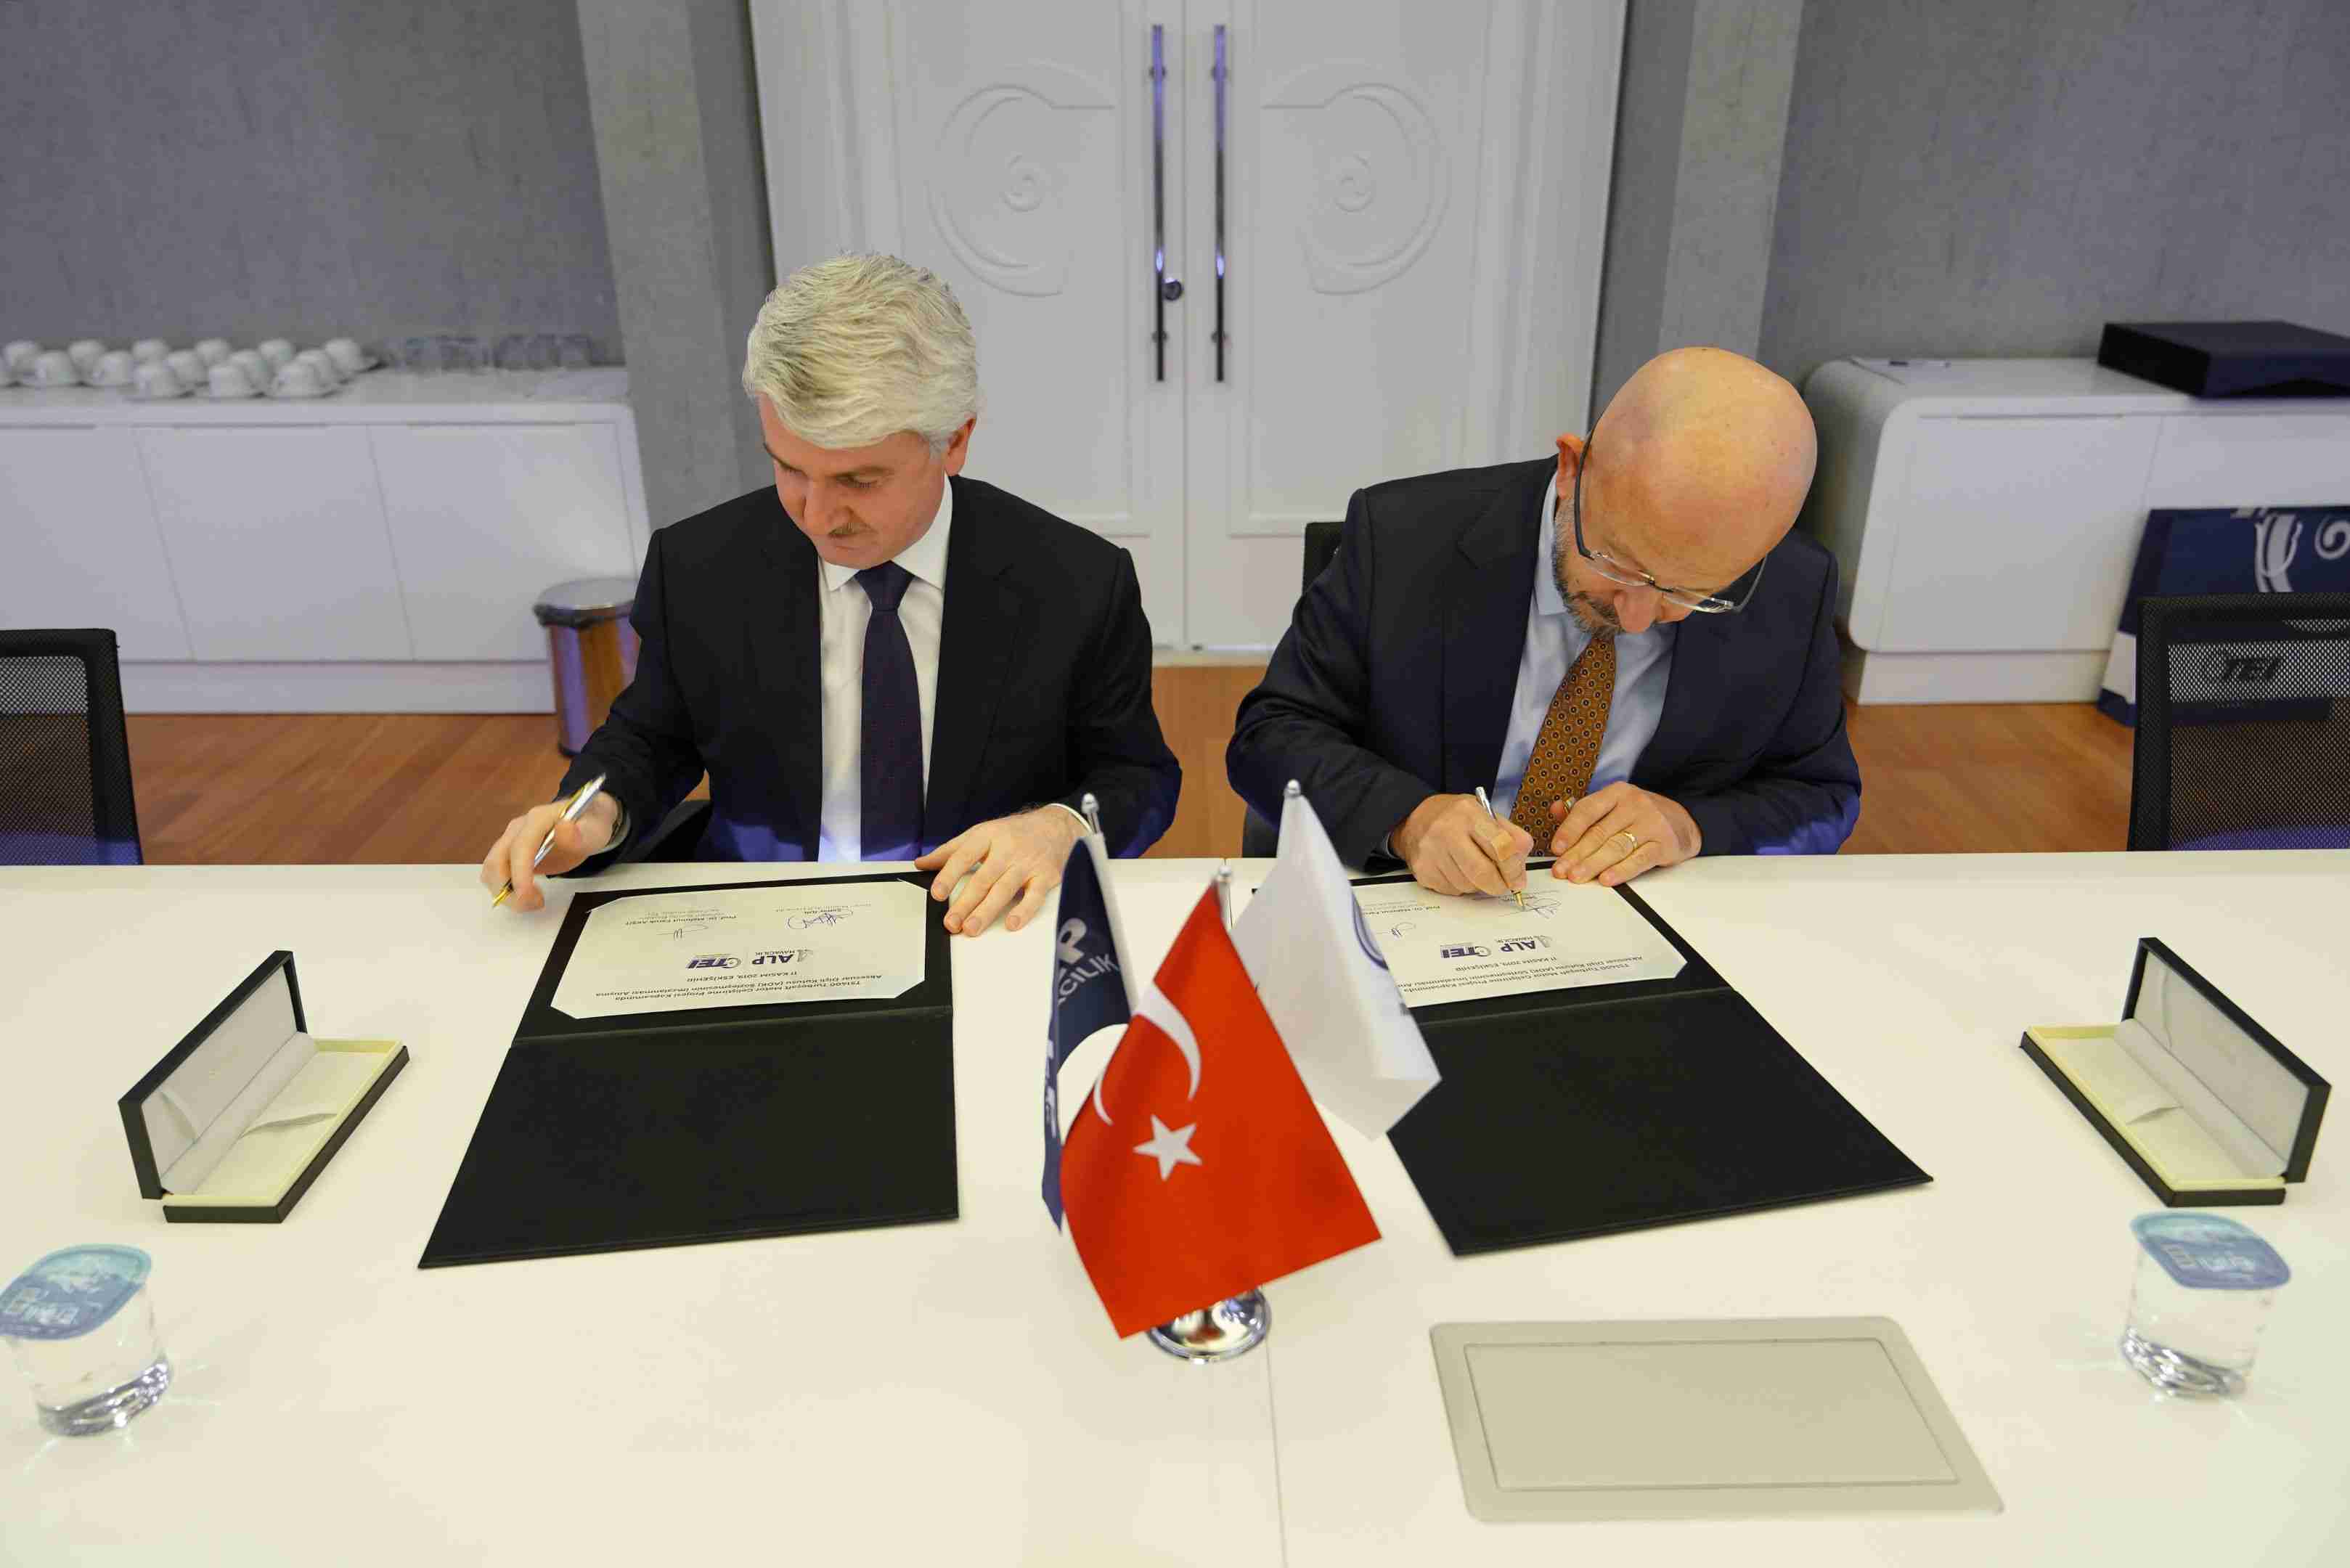 TEI ile Alp Havacılık arasında işbirliği anlaşması